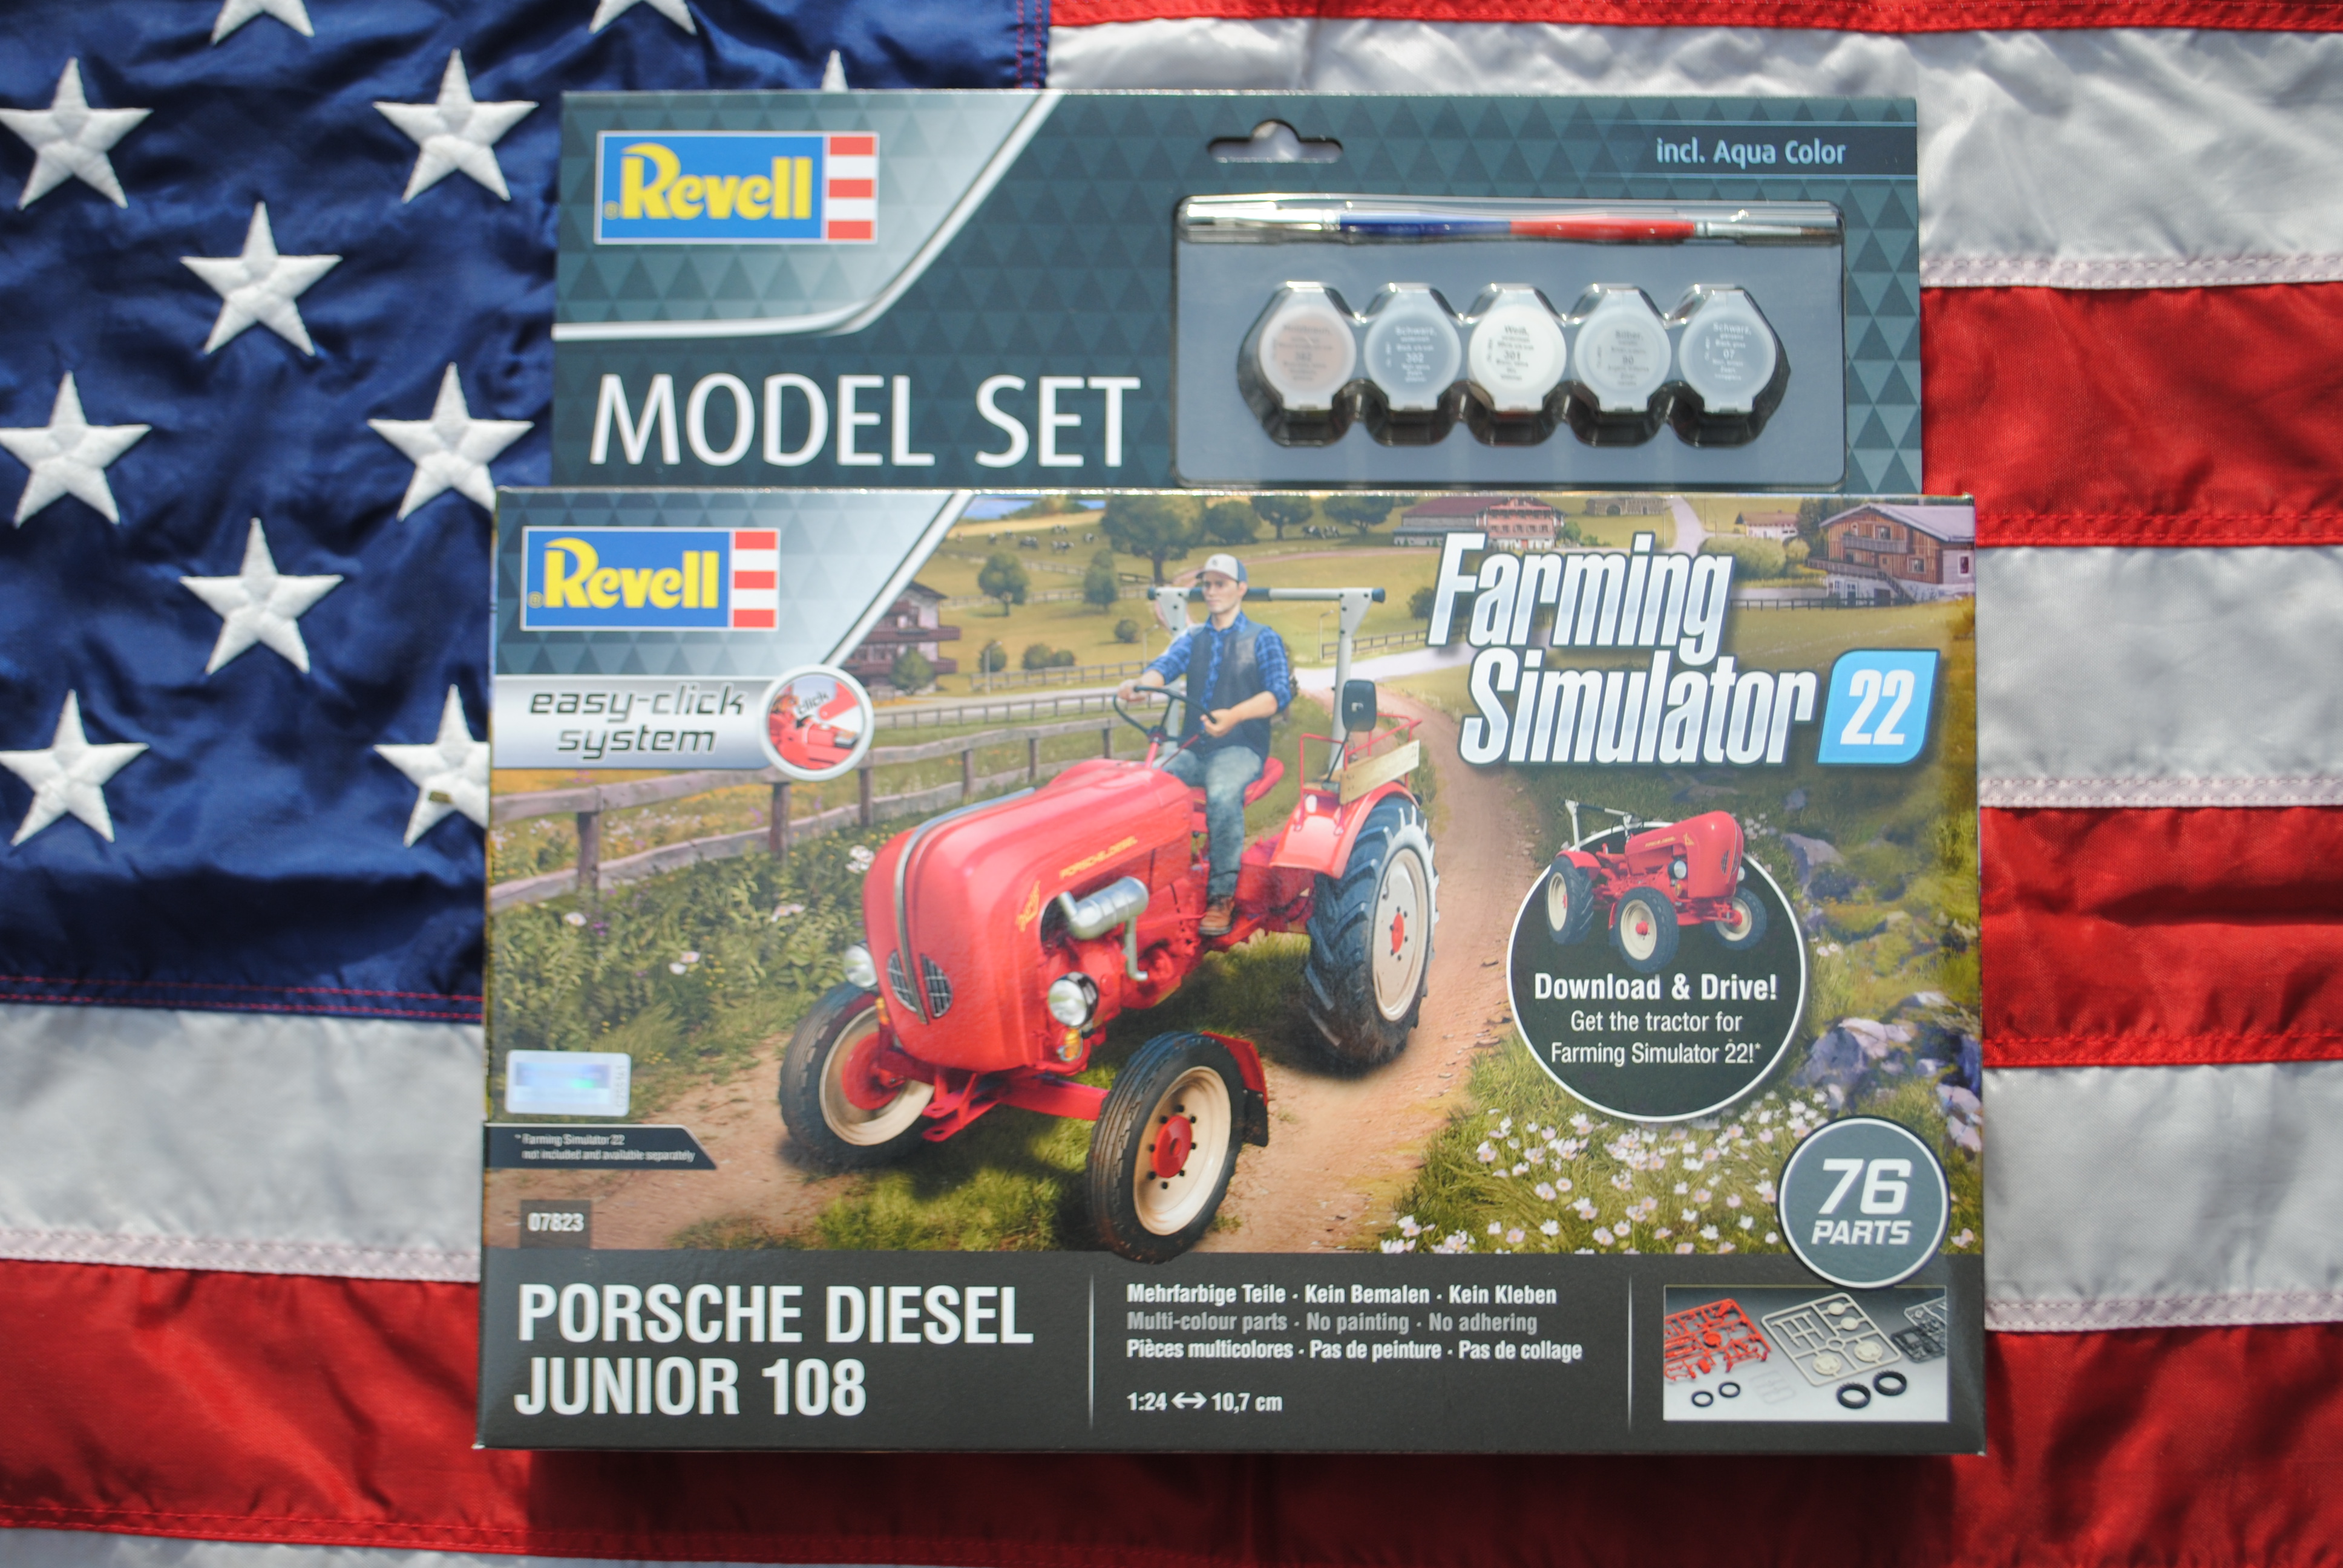 Maquette tracteur : Model Set Easy-Click : Porsche Junior 108